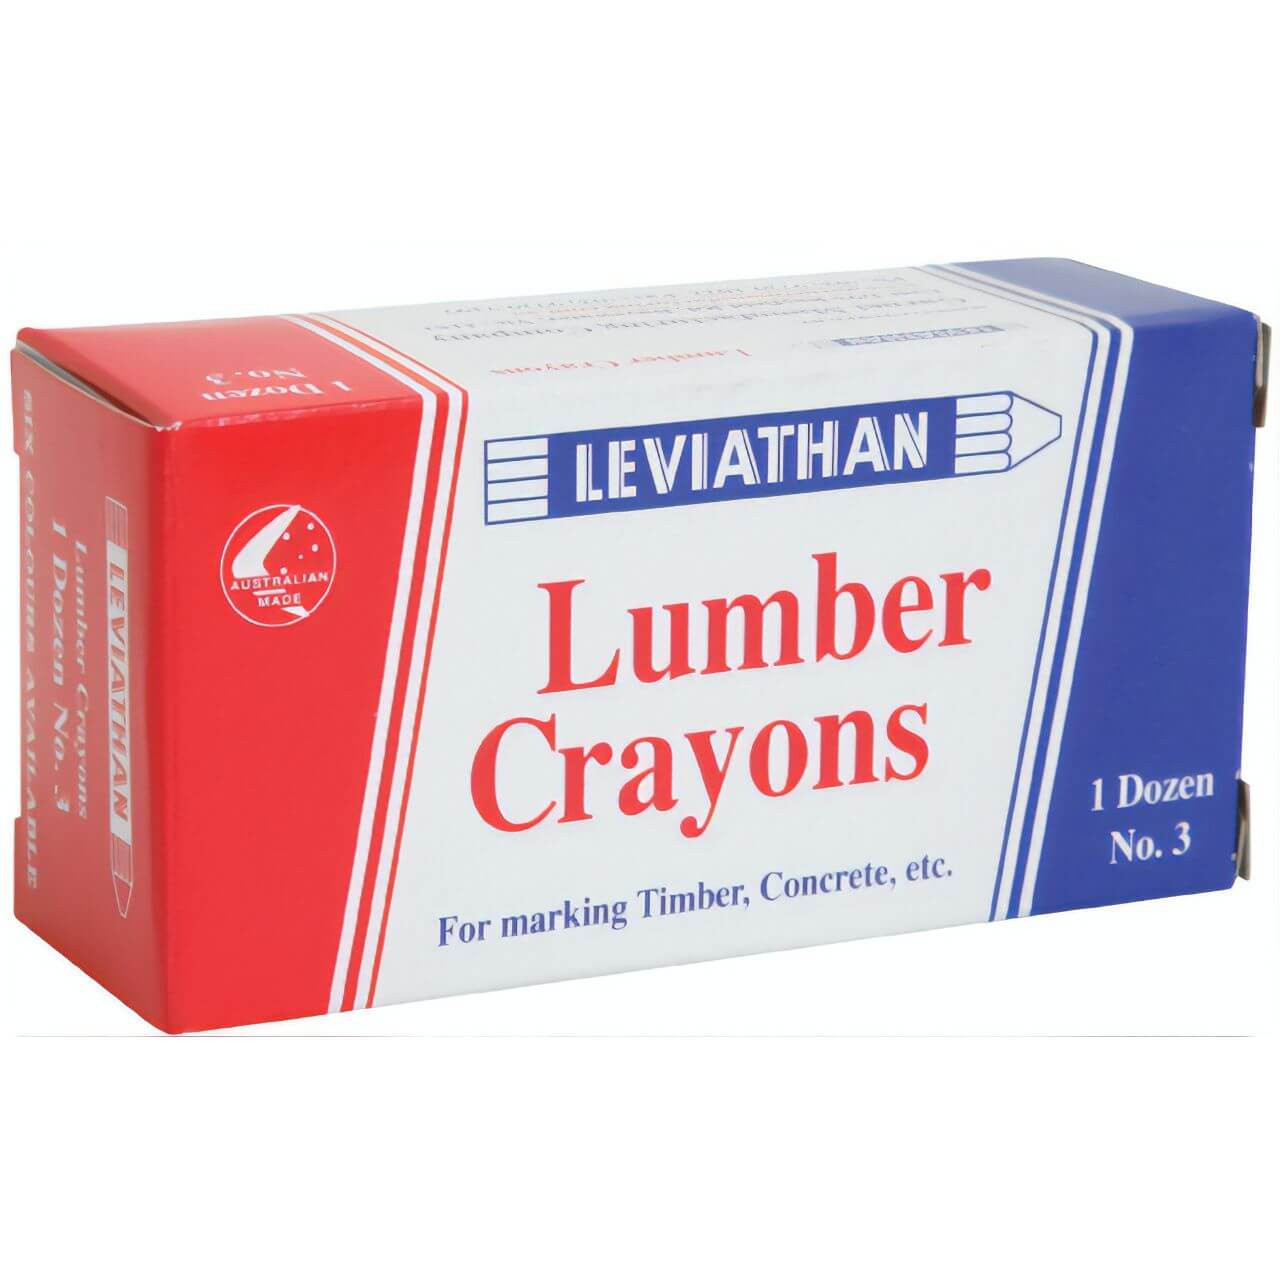 Leviathan No3 Lumber Crayon Black 12pk